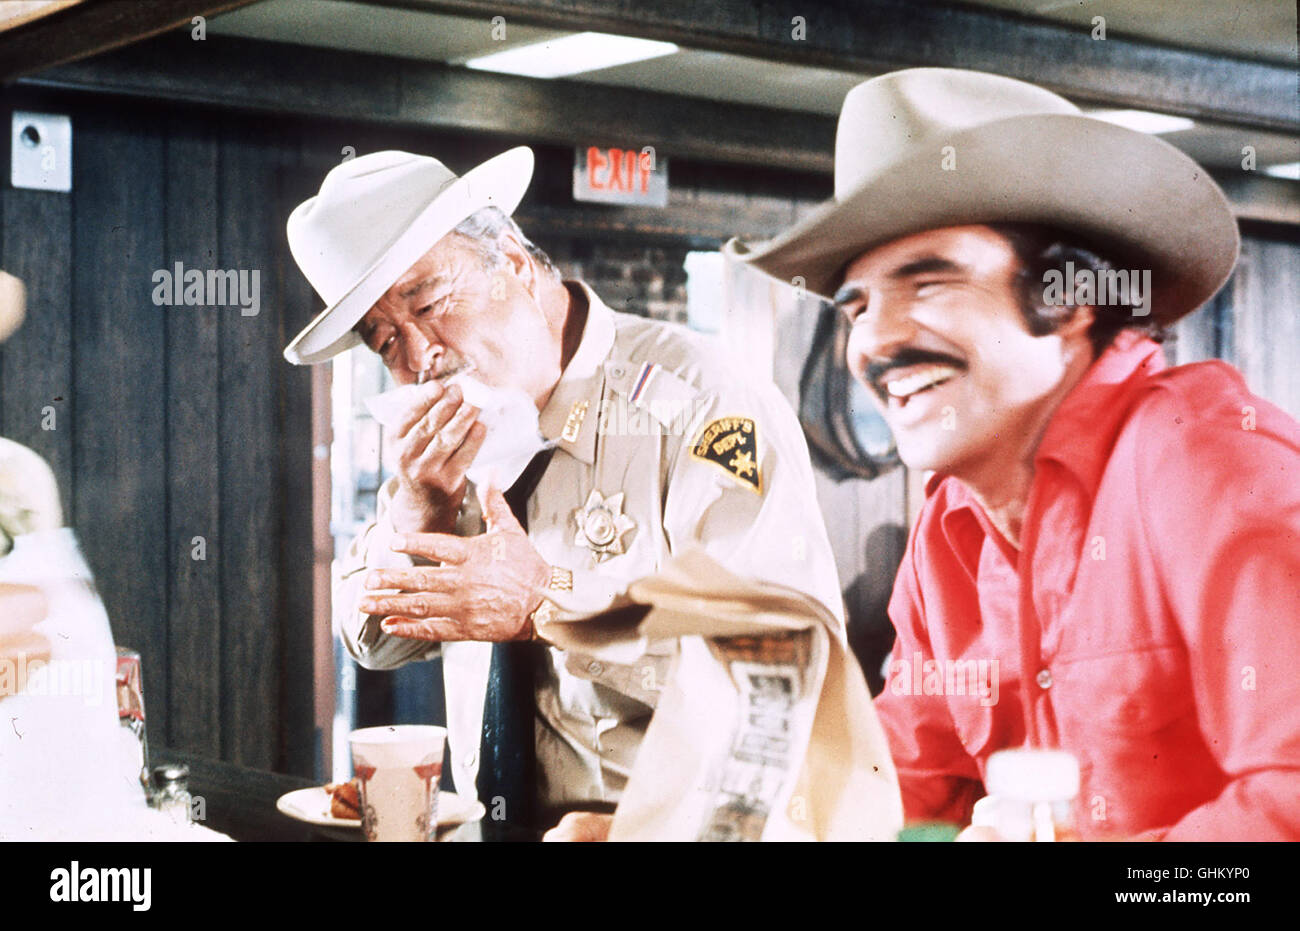 Eine Wette um einen Biertransport löst eine wilde Verfolgungsjagd aus... Bild: JACKIE GLEASON (Sheriff Buford T. Justice), BURT REYNOLDS (Bandit) Regie: Hal Needham aka. Smokey And The Bandit Stock Photo